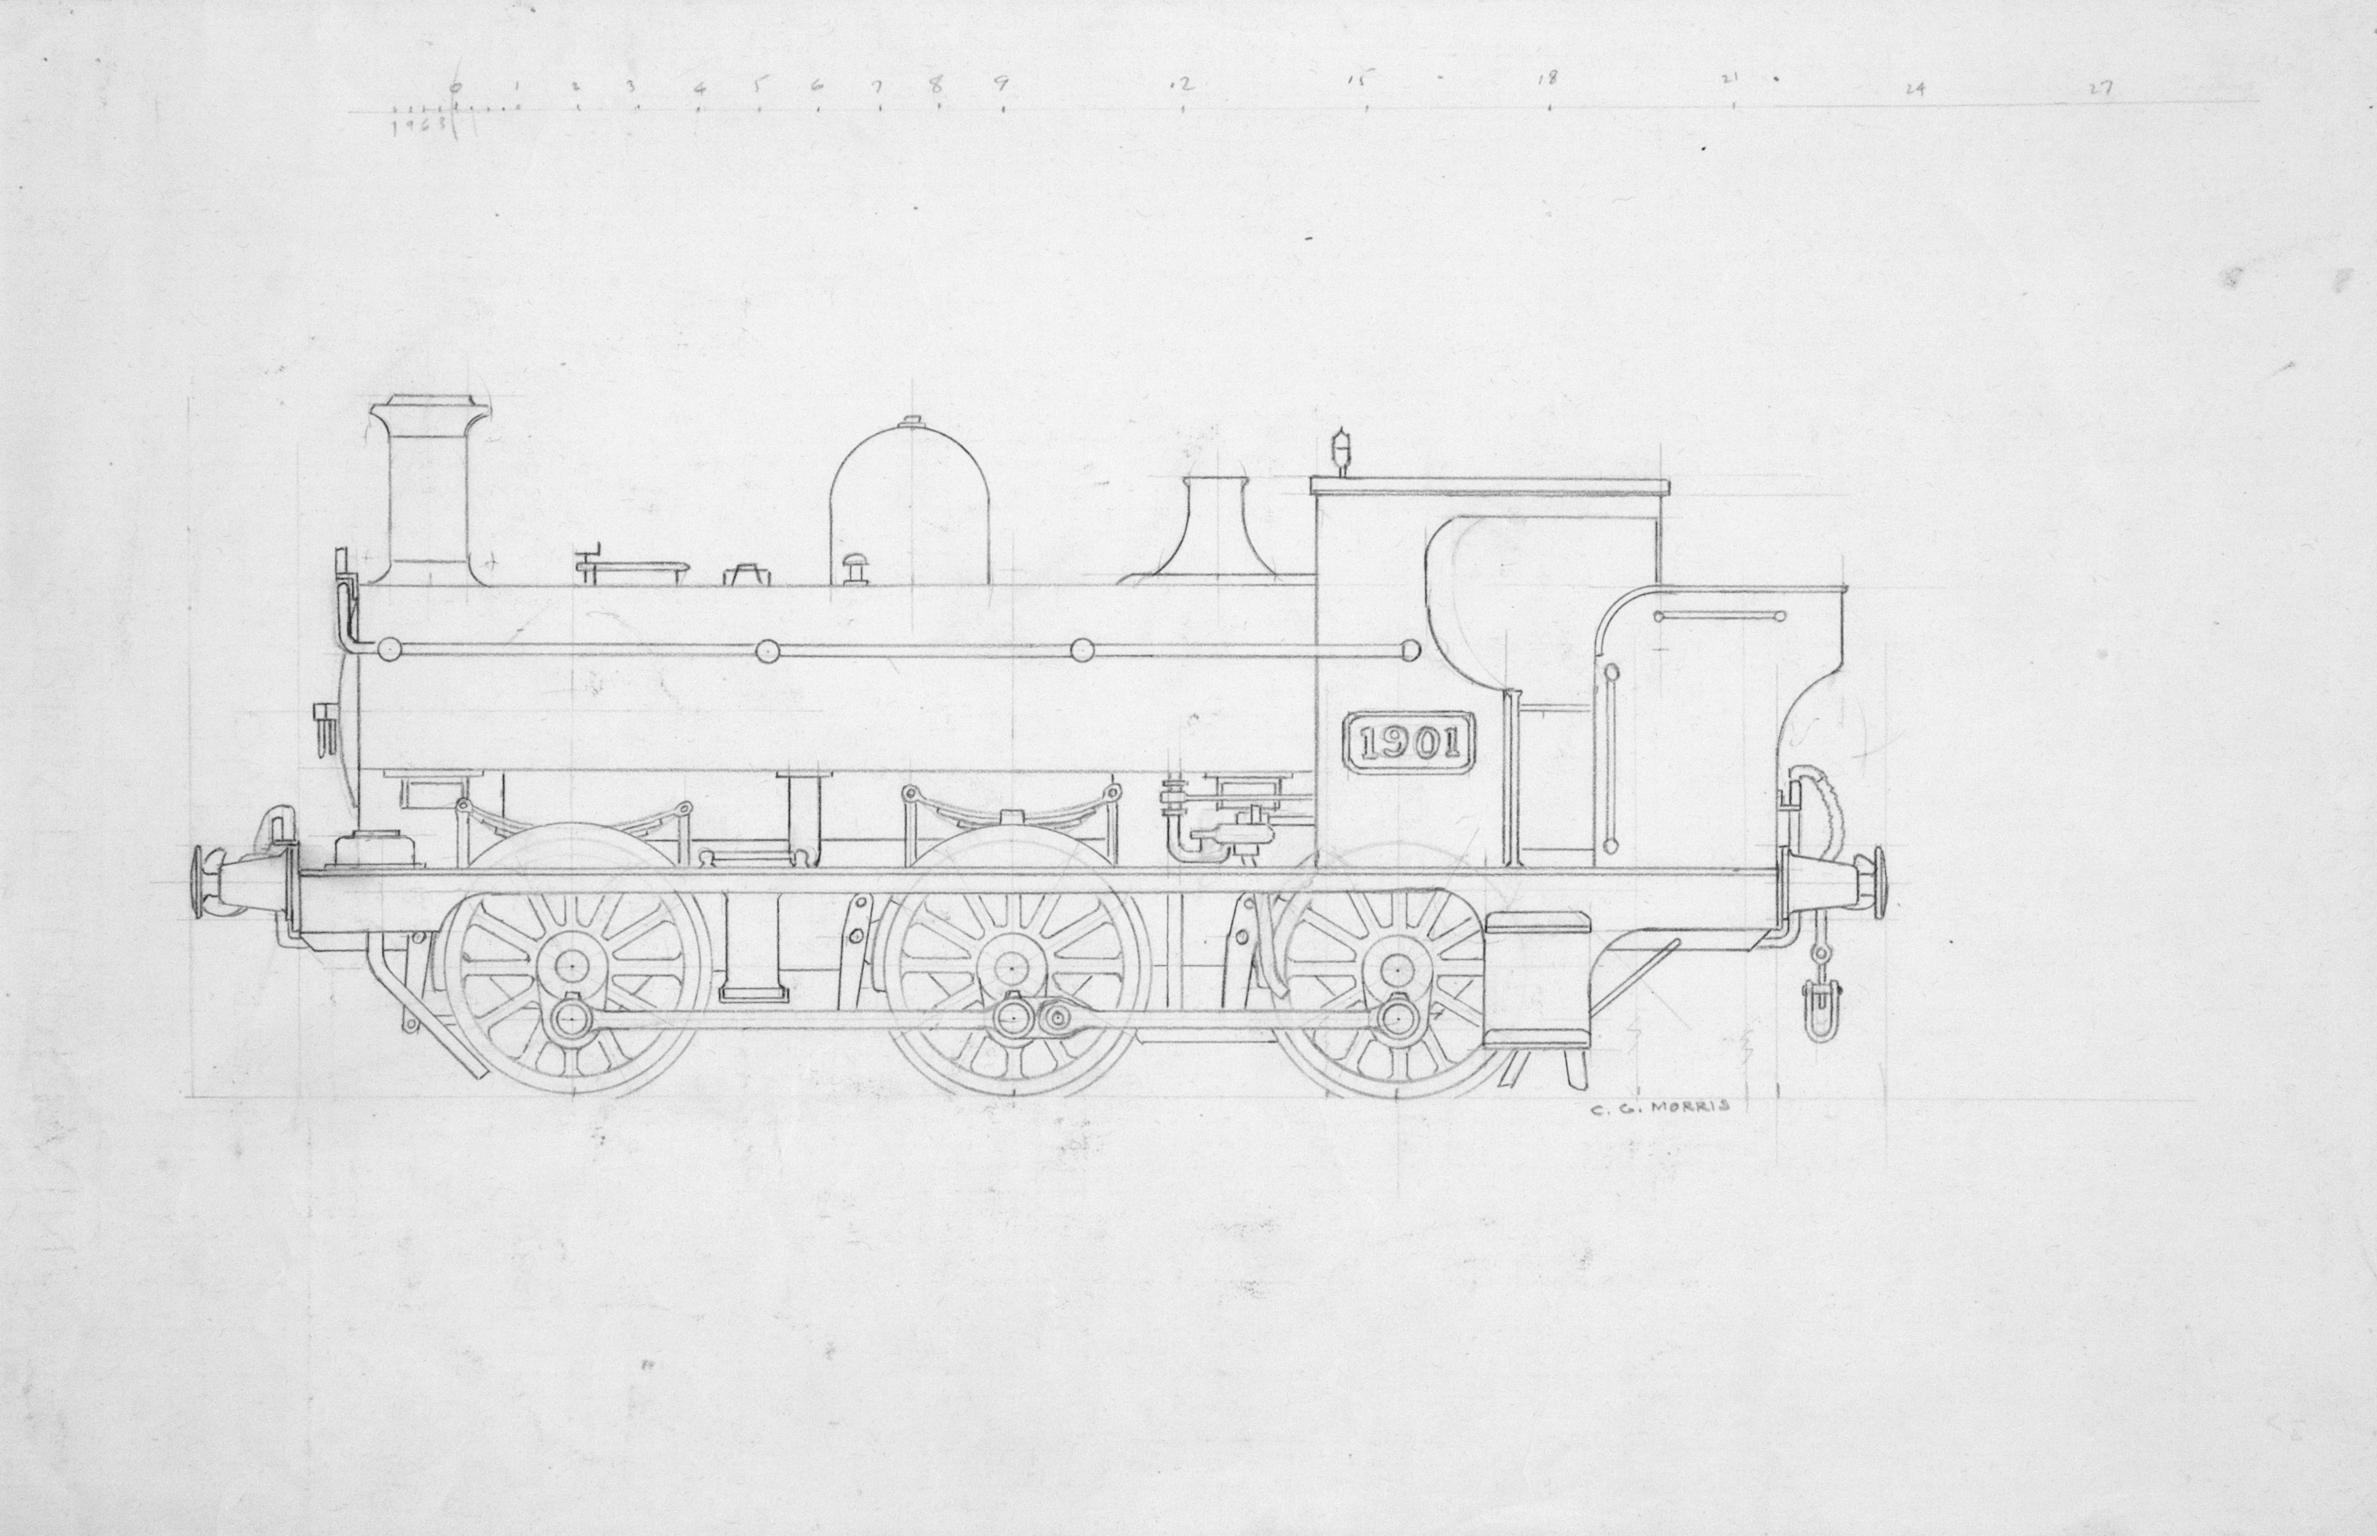 Locomotive No. '1901', drawing